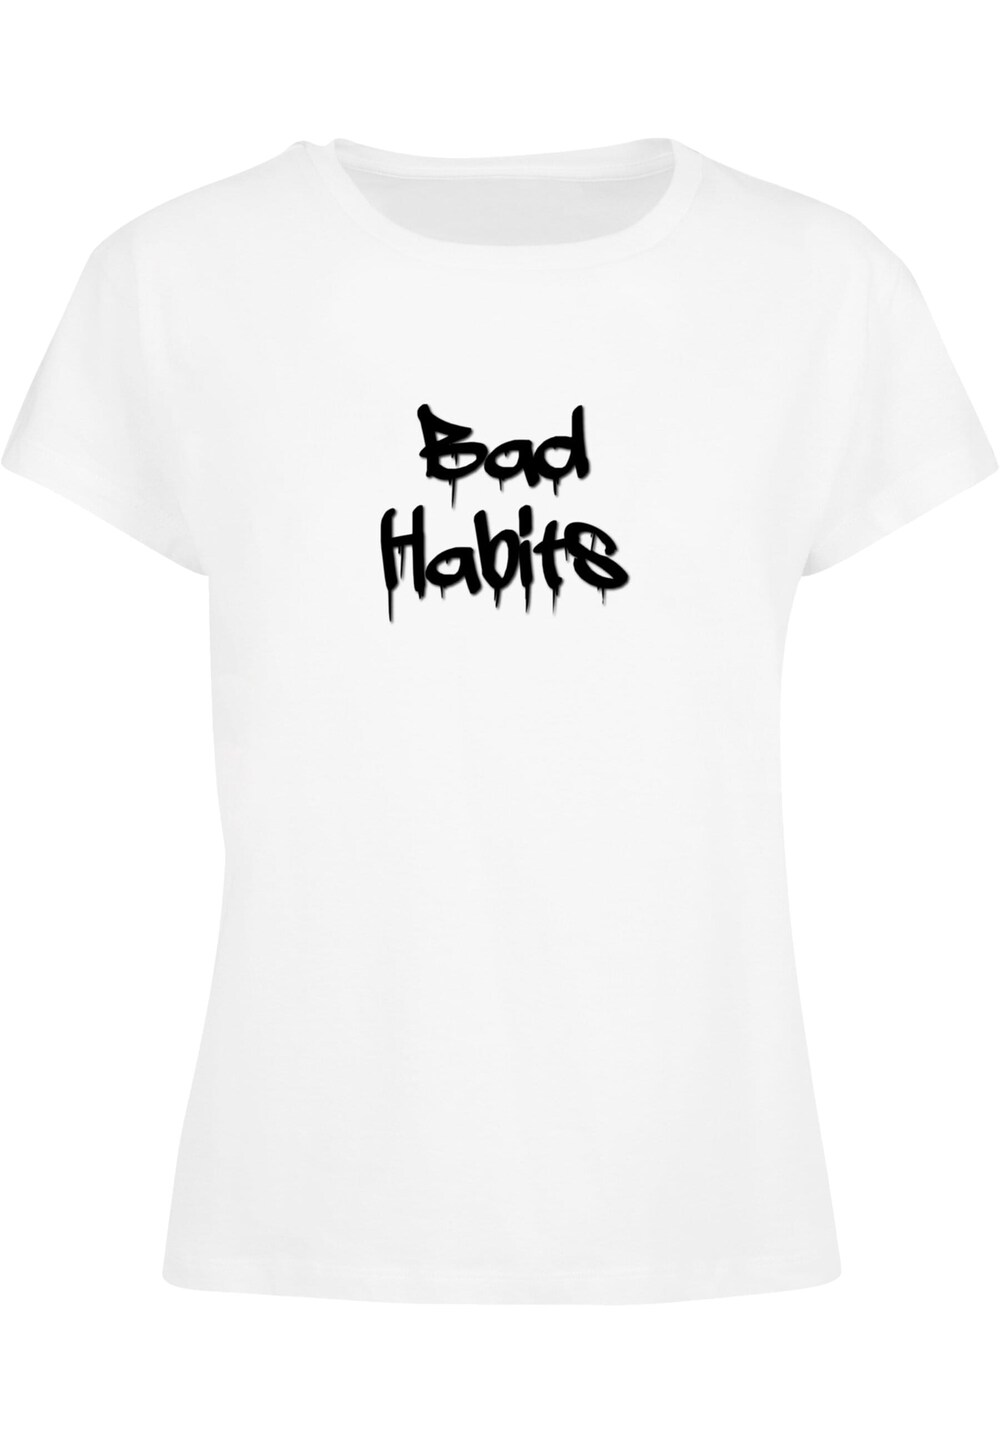 Рубашка Merchcode Bad Habits, белый